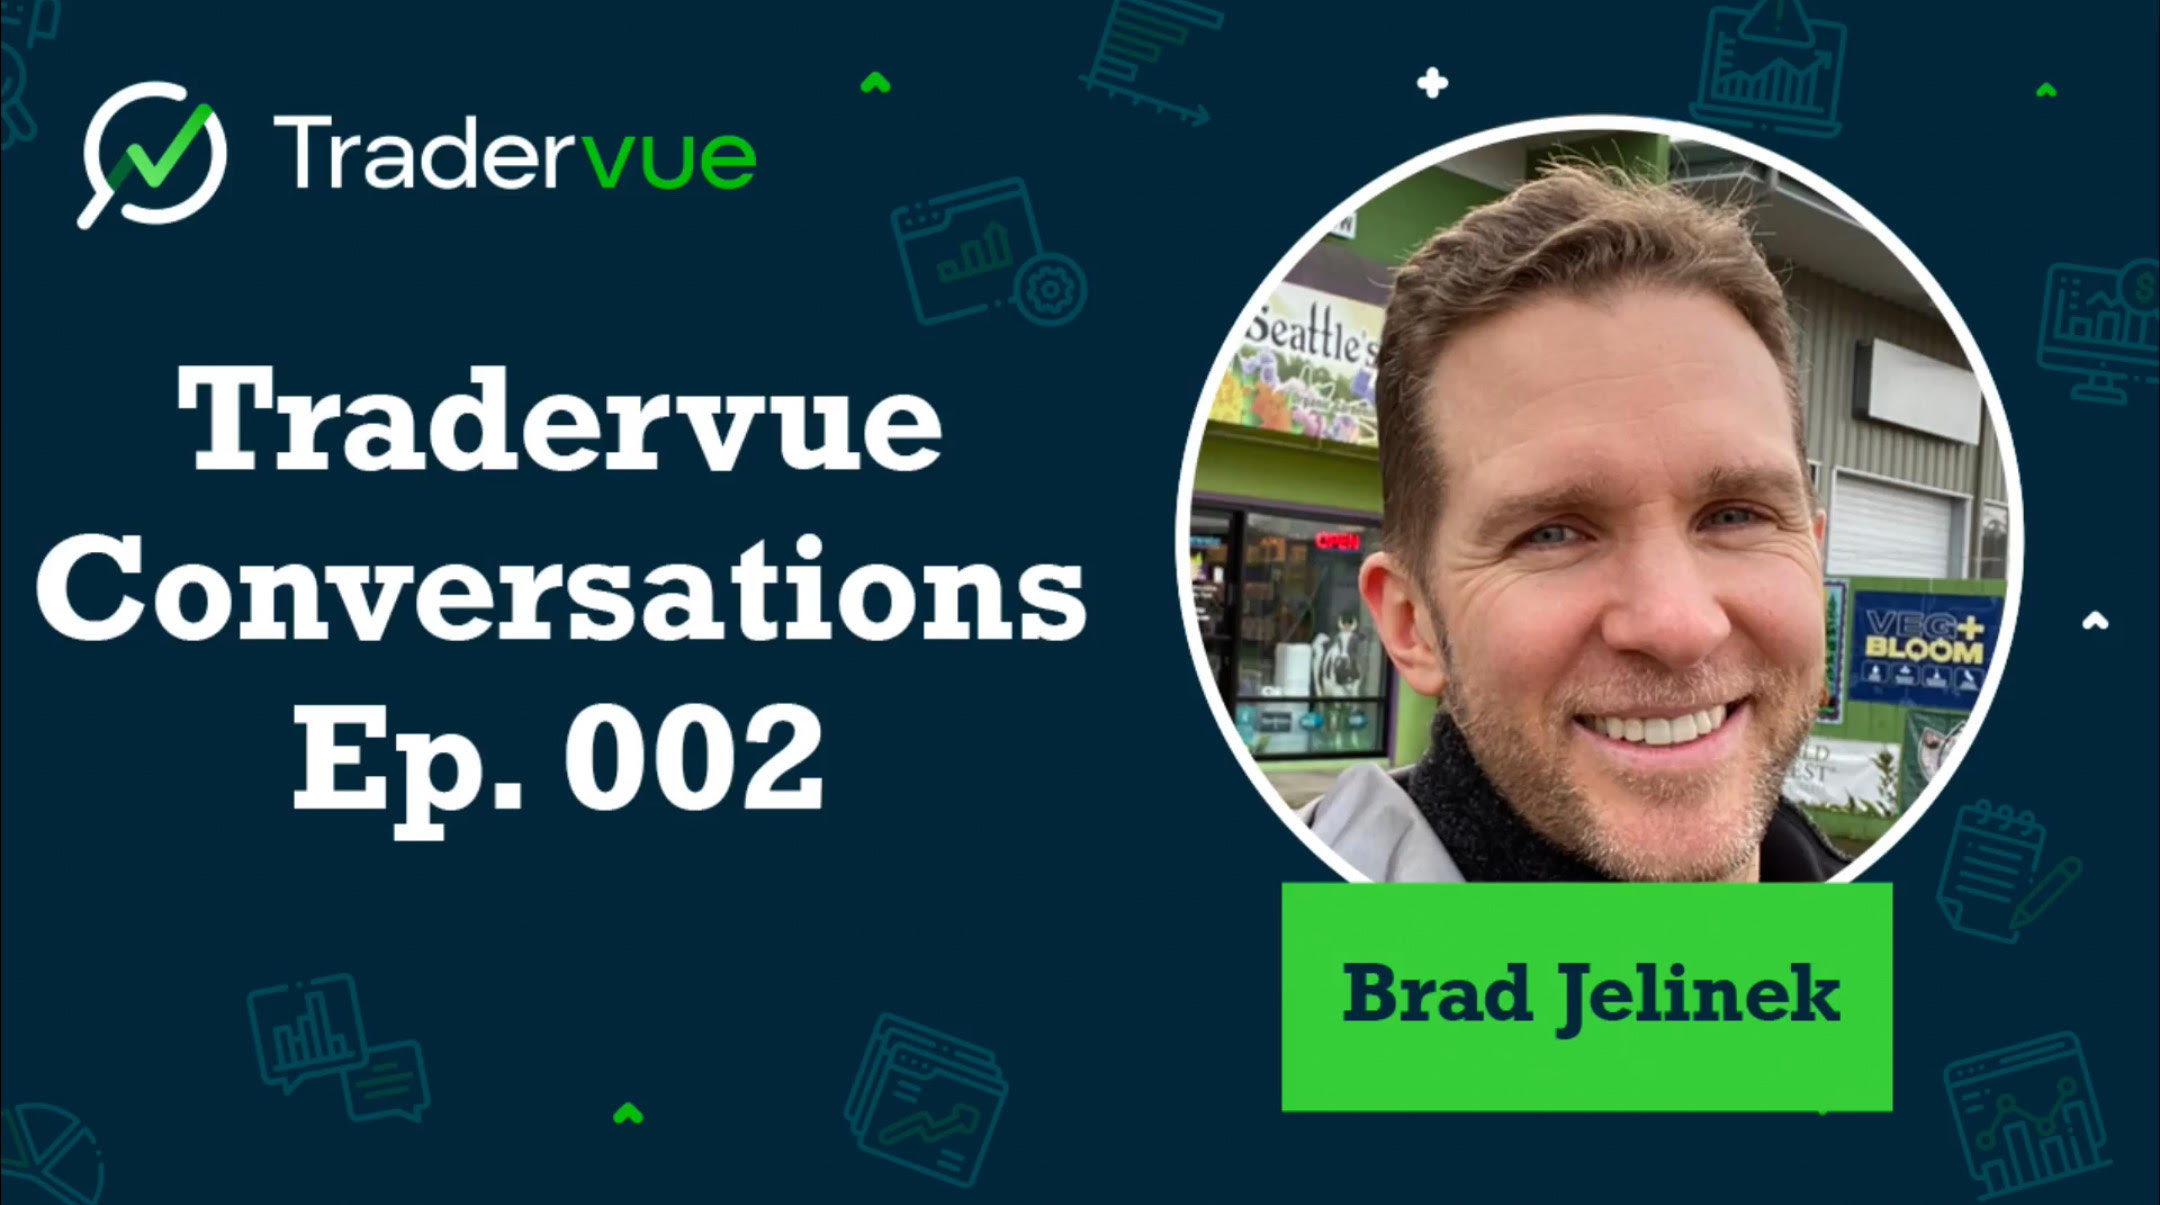 Tradervue Conversations Episode 2 - Brad Jelinek